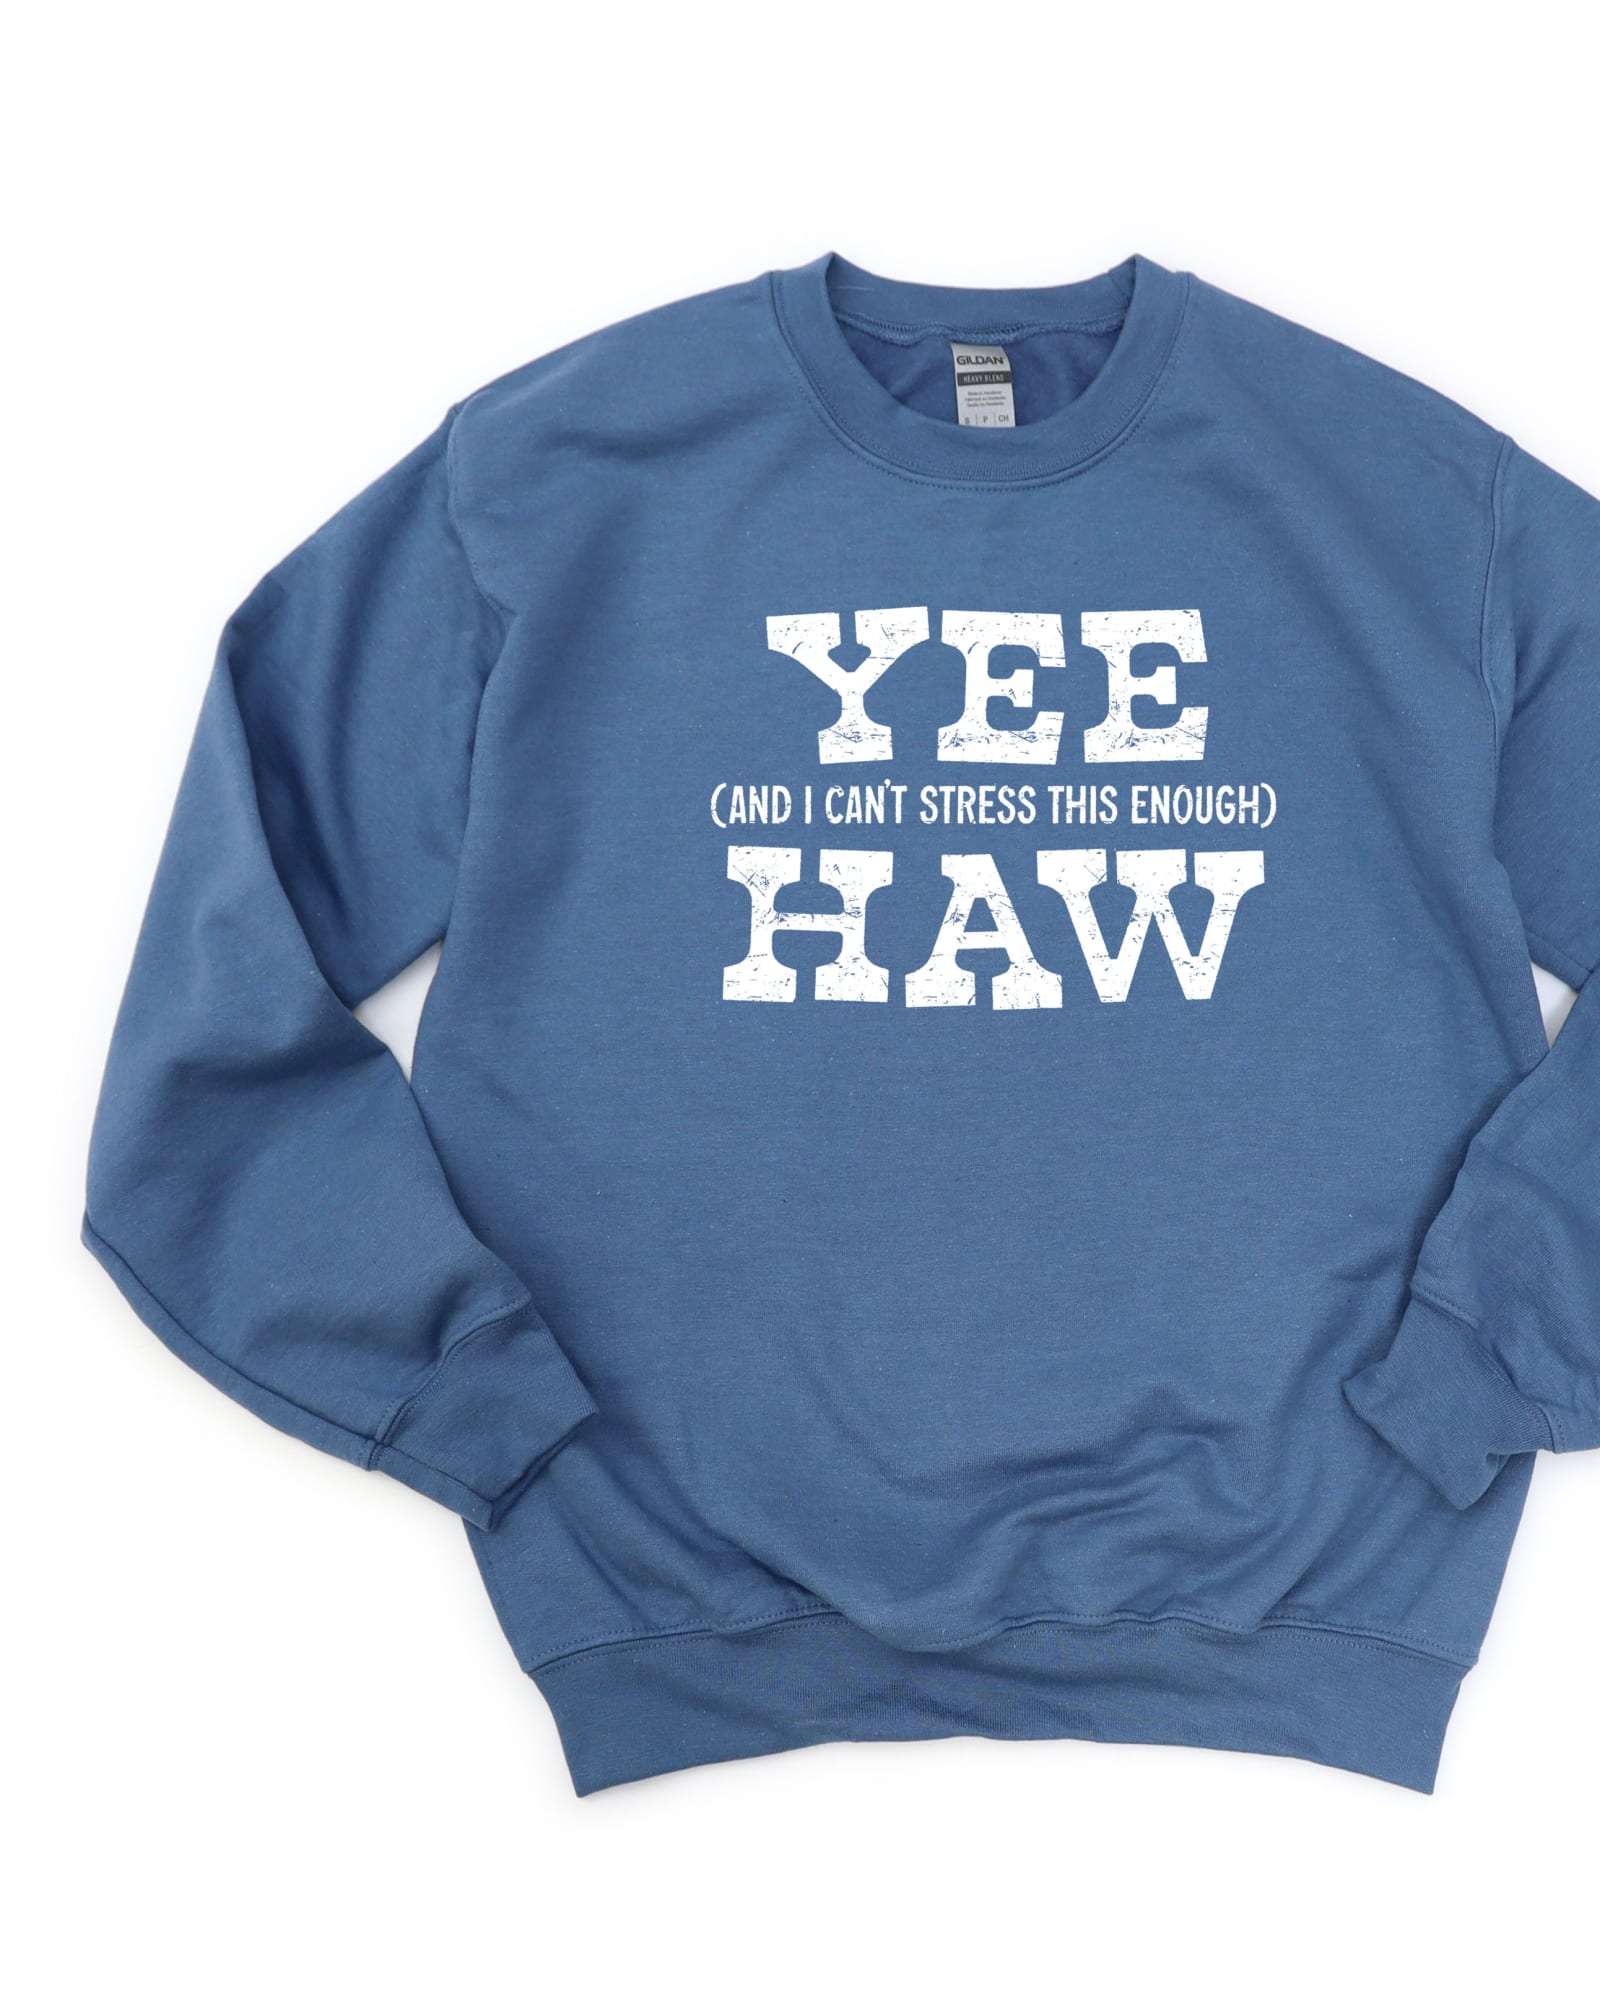 Yee Haw Stress Graphic Sweatshirt | Slate